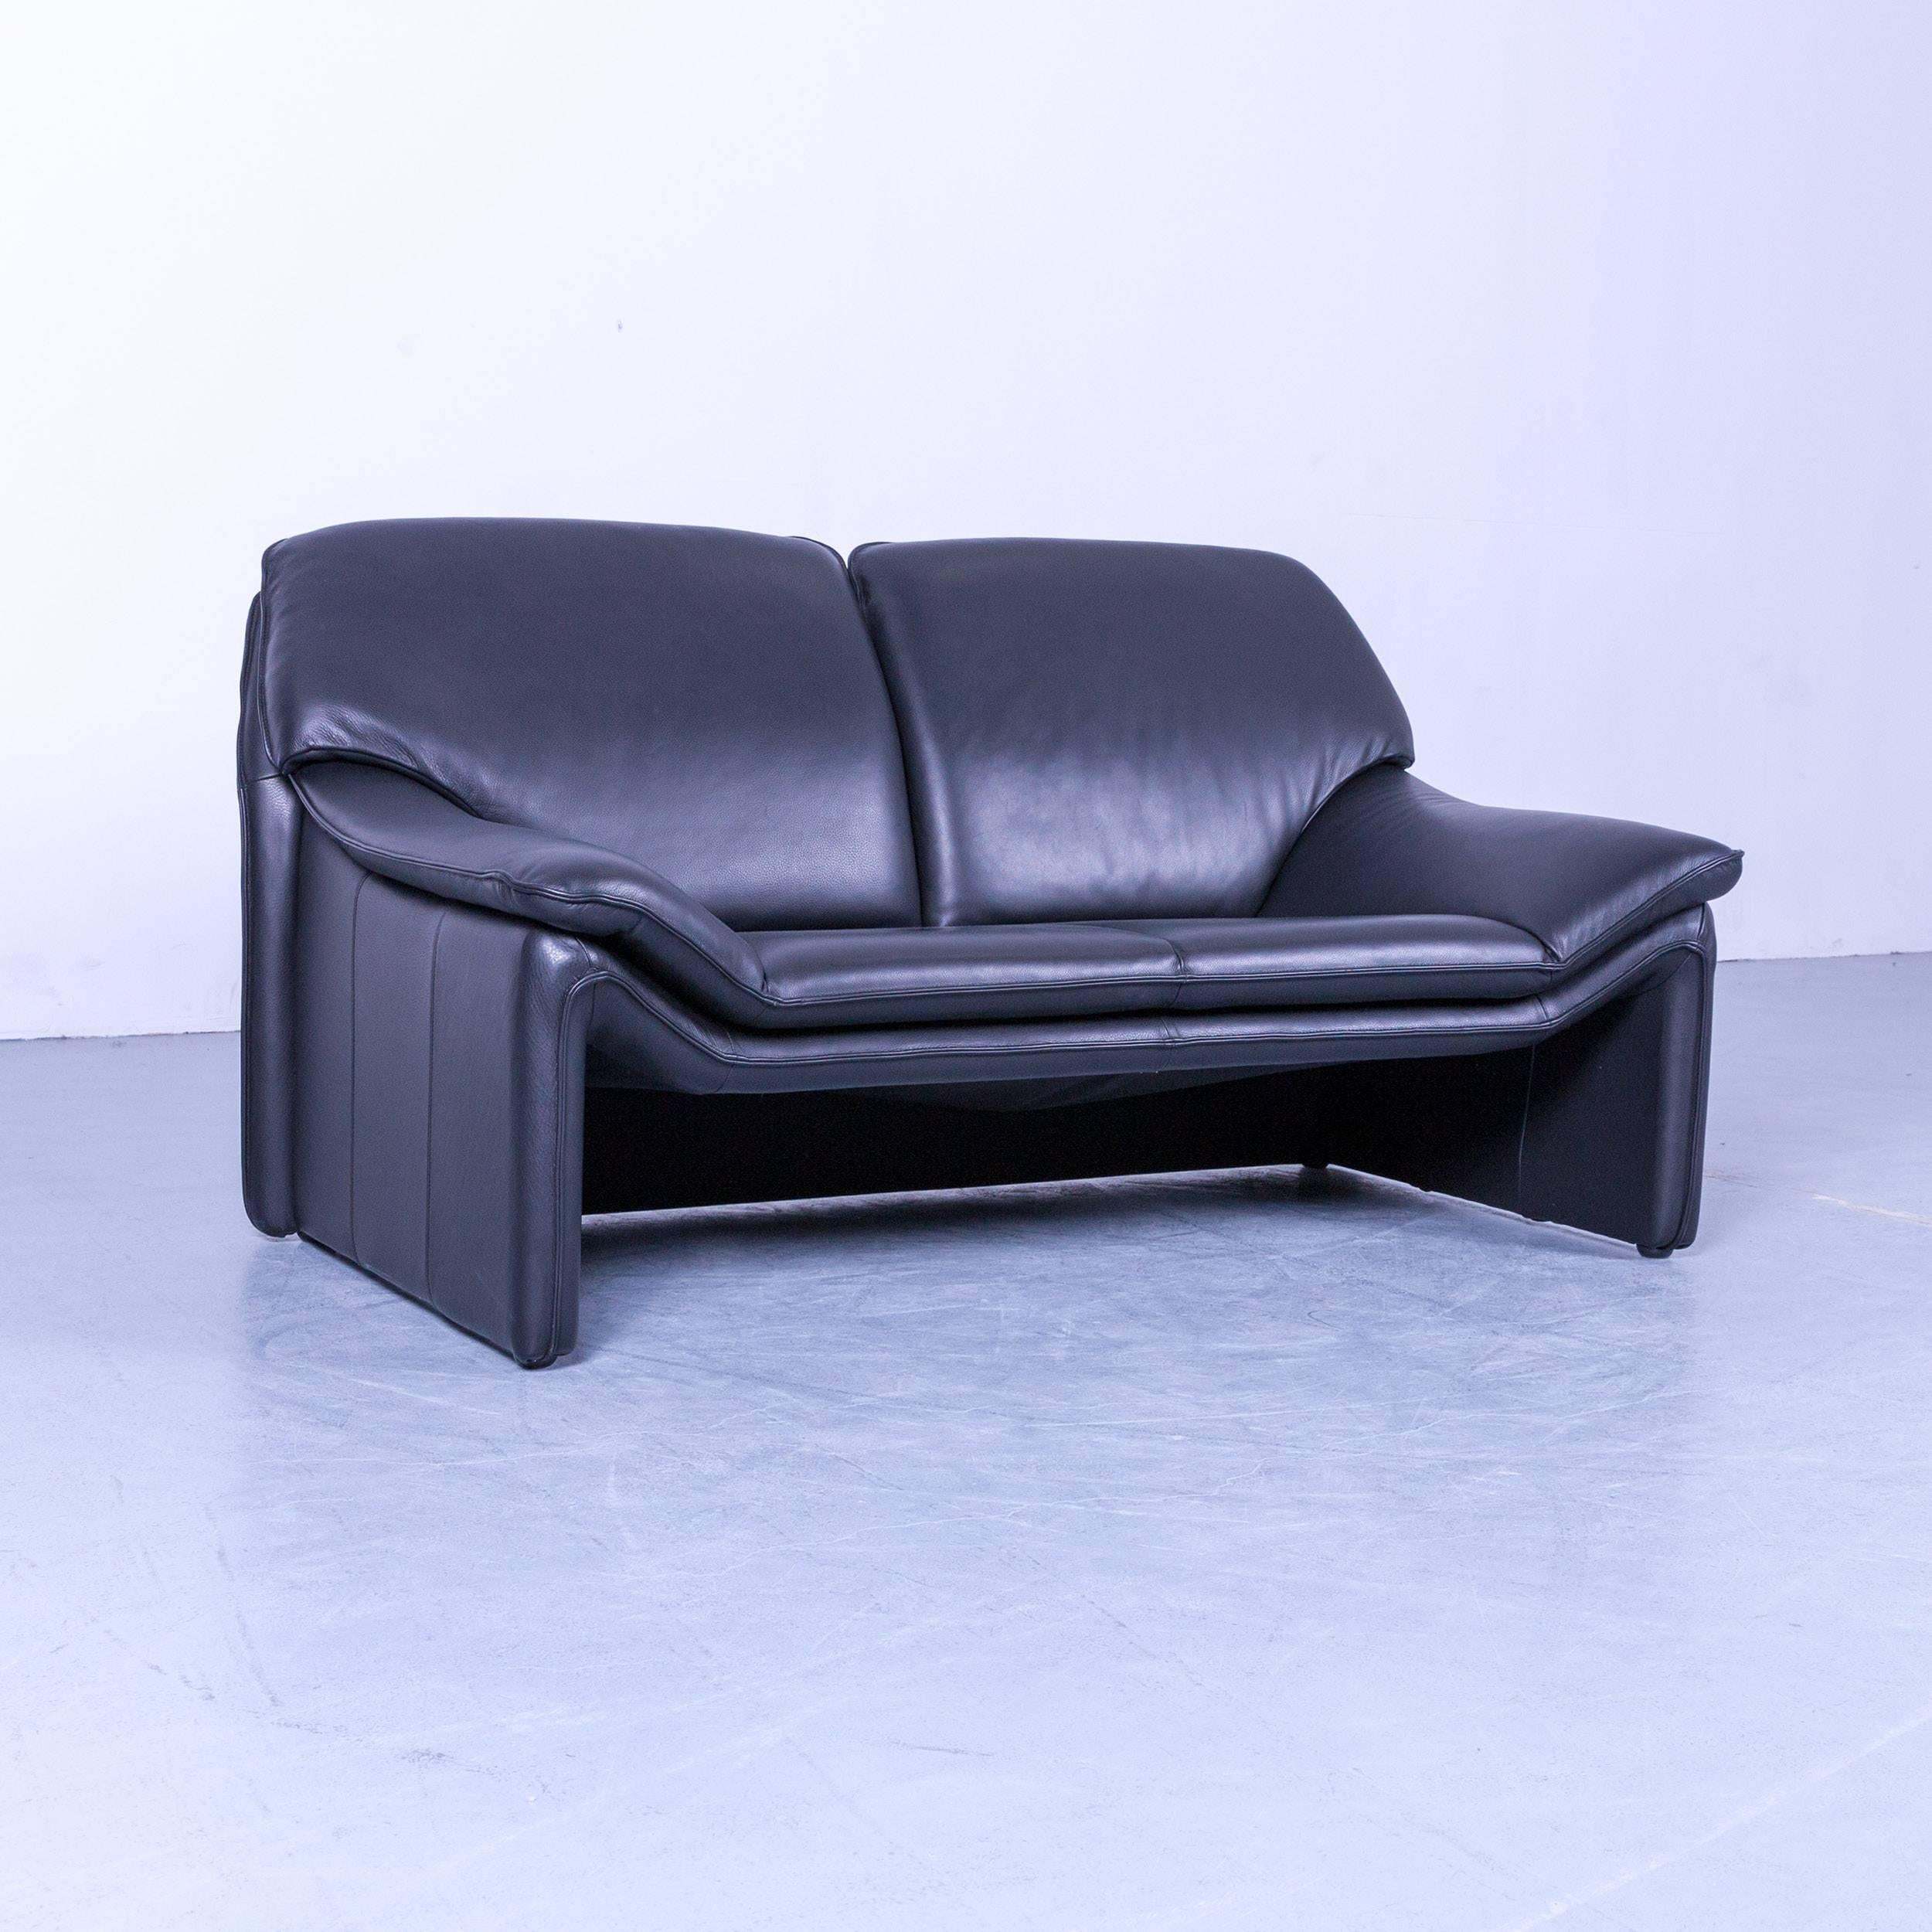 Schwarzes original Laauser Atlanta Designer-Ledersofa, in minimalistischem und modernem Design, gemacht für puren Komfort.